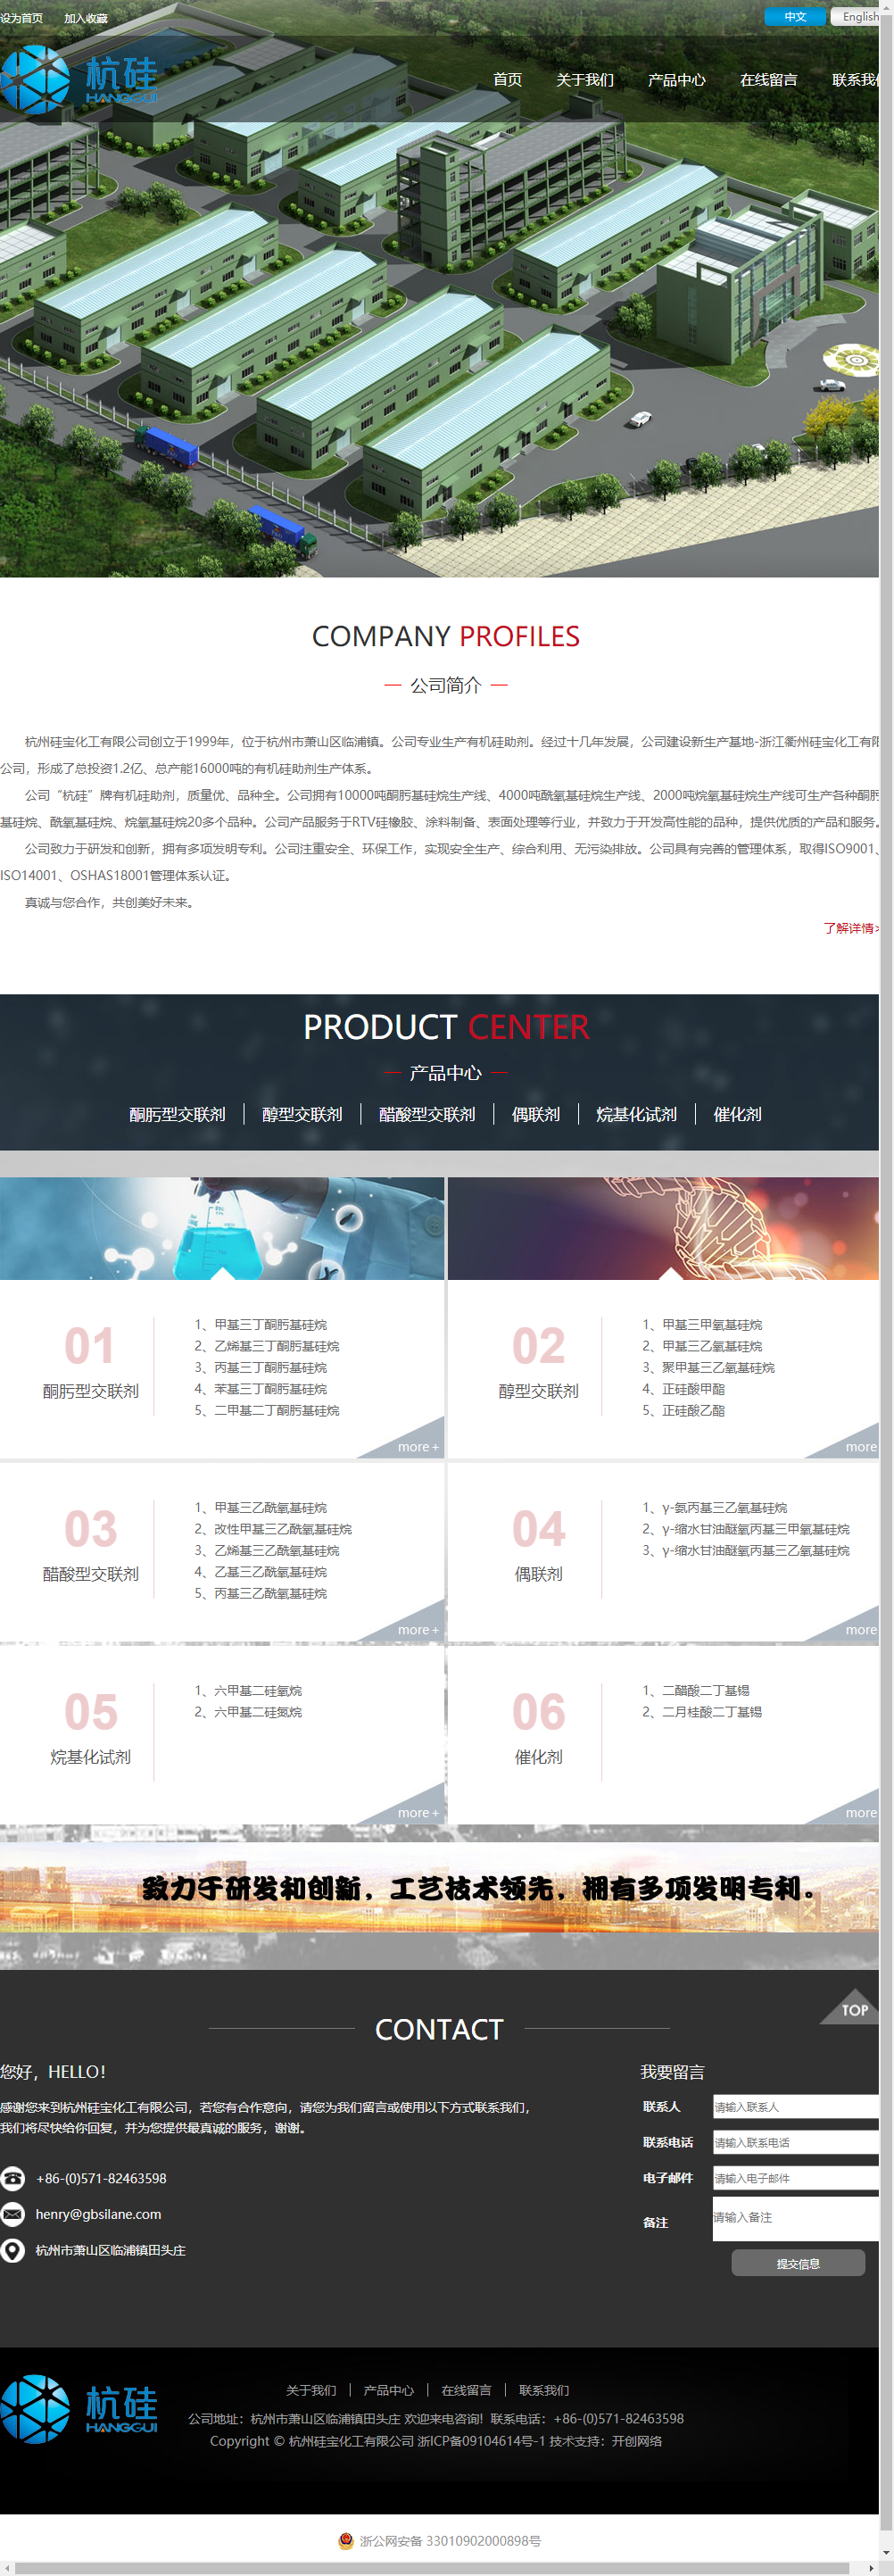 杭州硅宝化工有限公司网站案例